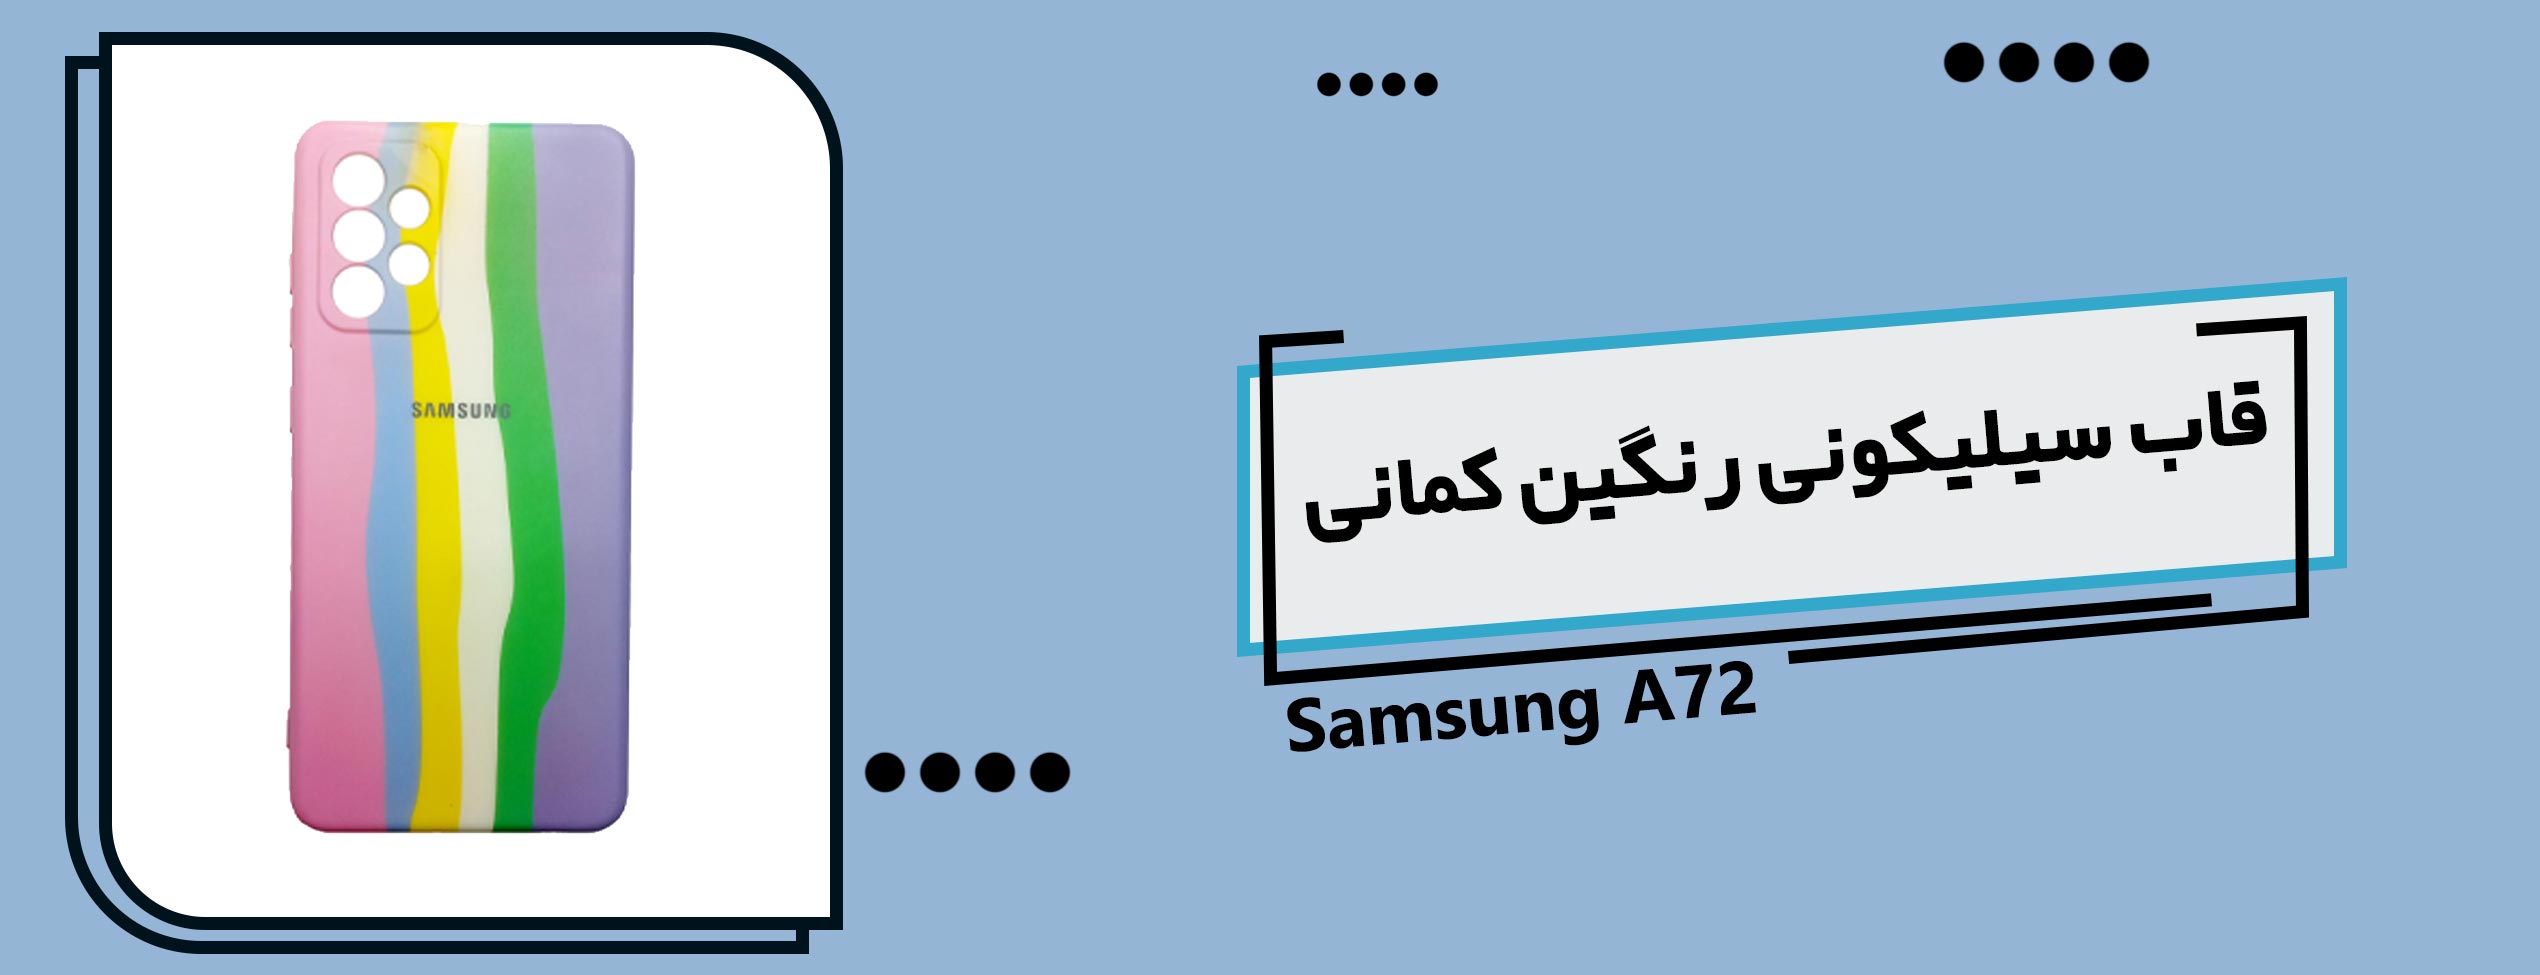 قاب سیلیکونی رنگین کمانی گوشی سامسونگ Samsung A72